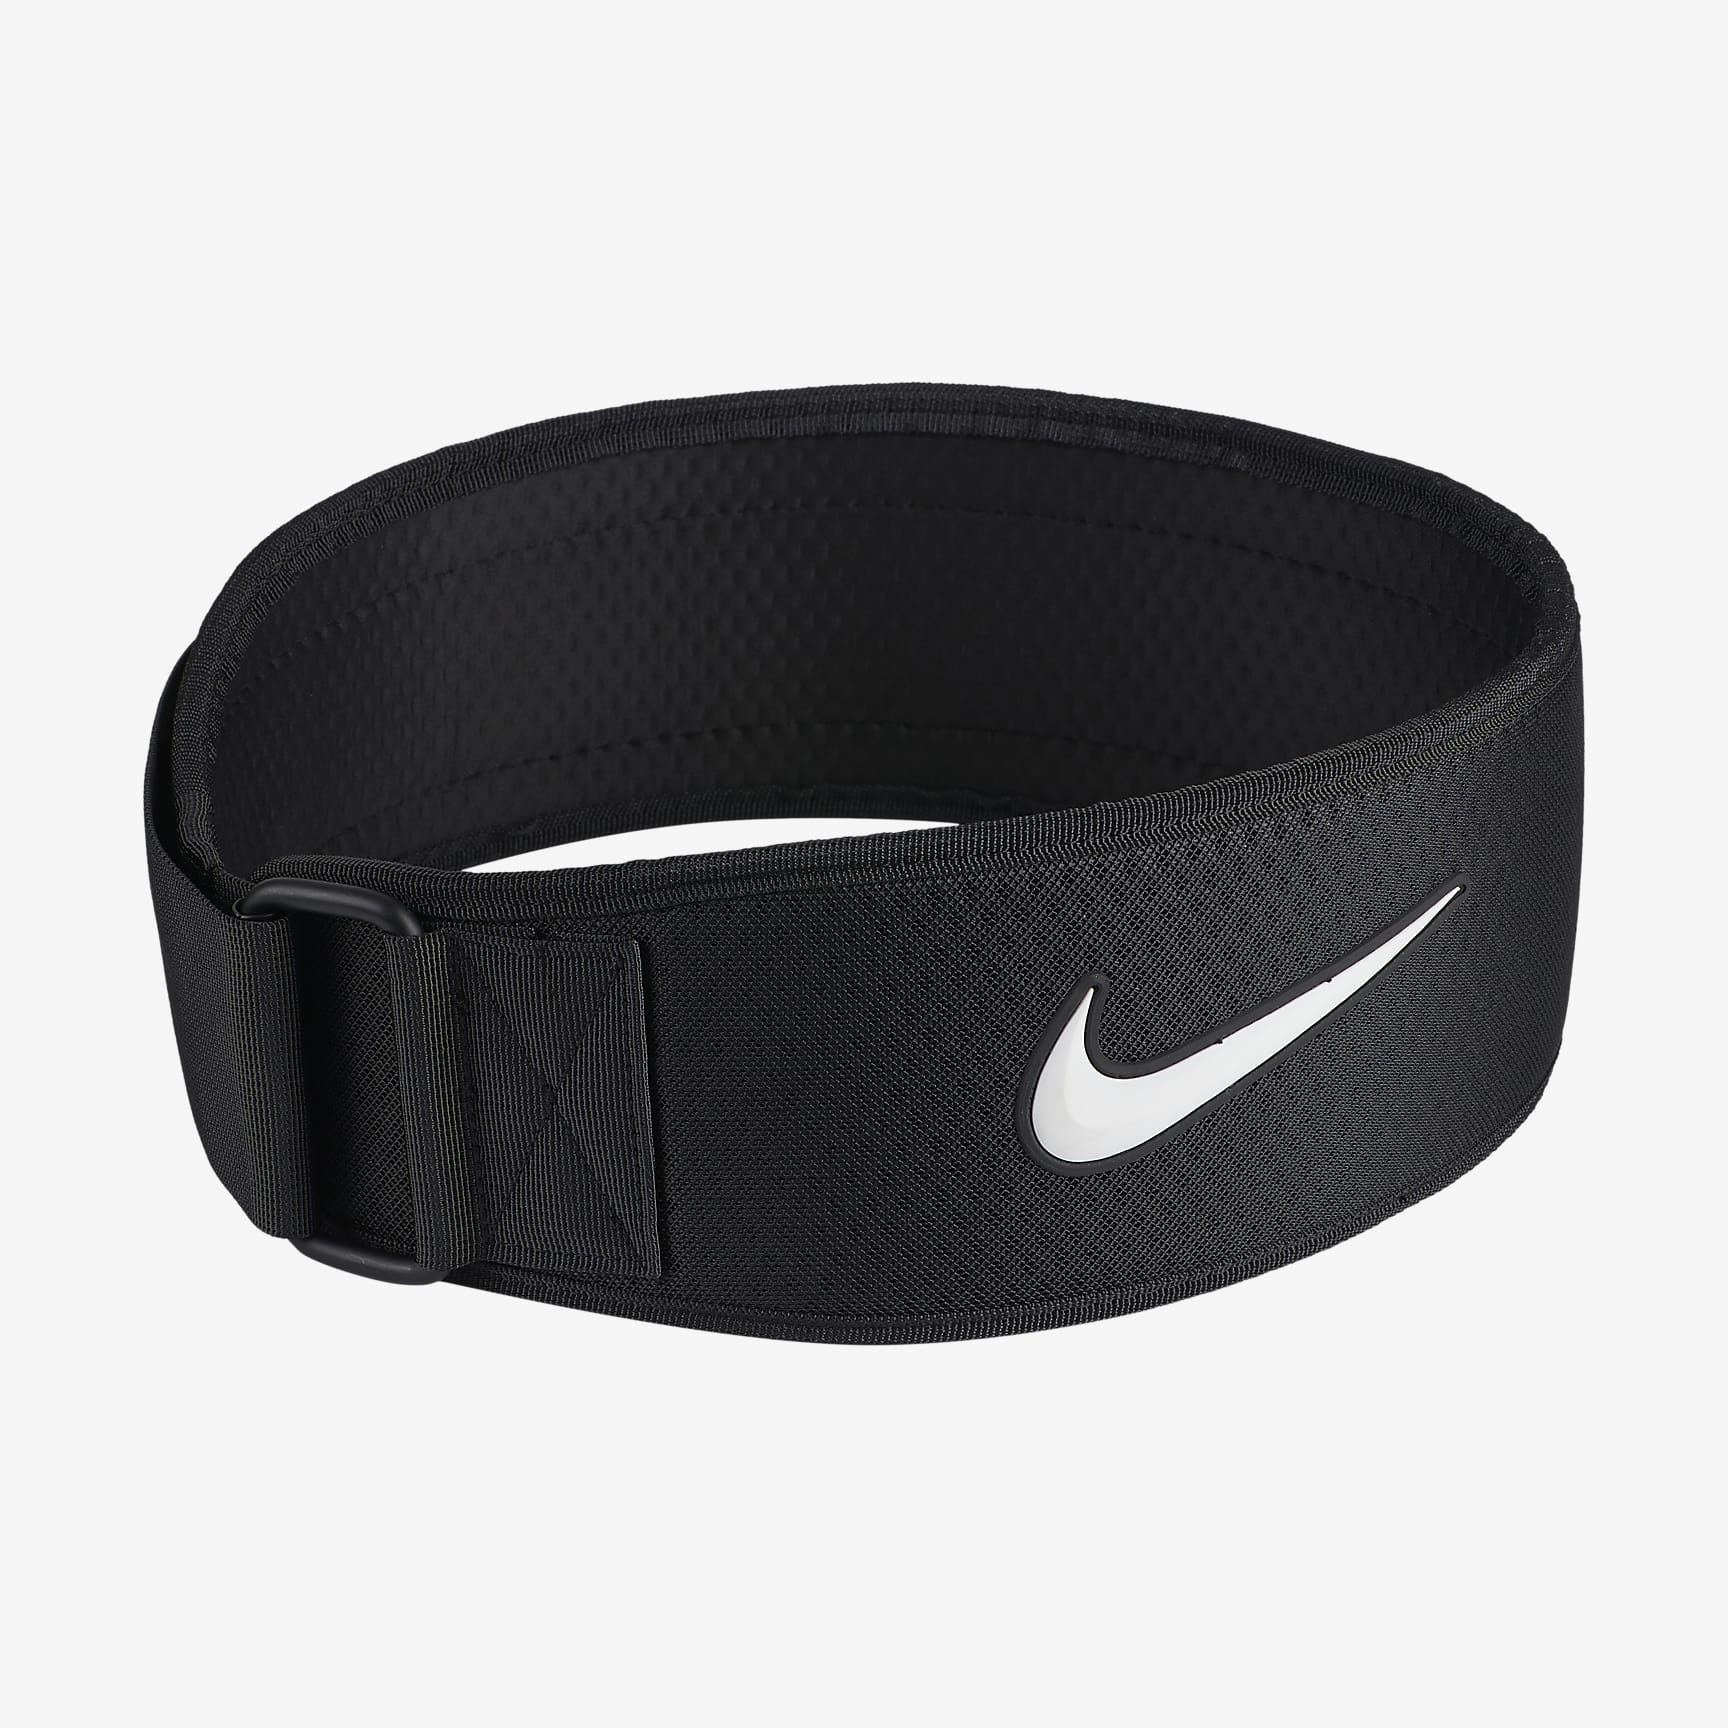 Nike Intensity Men's Training Belt - Black/White